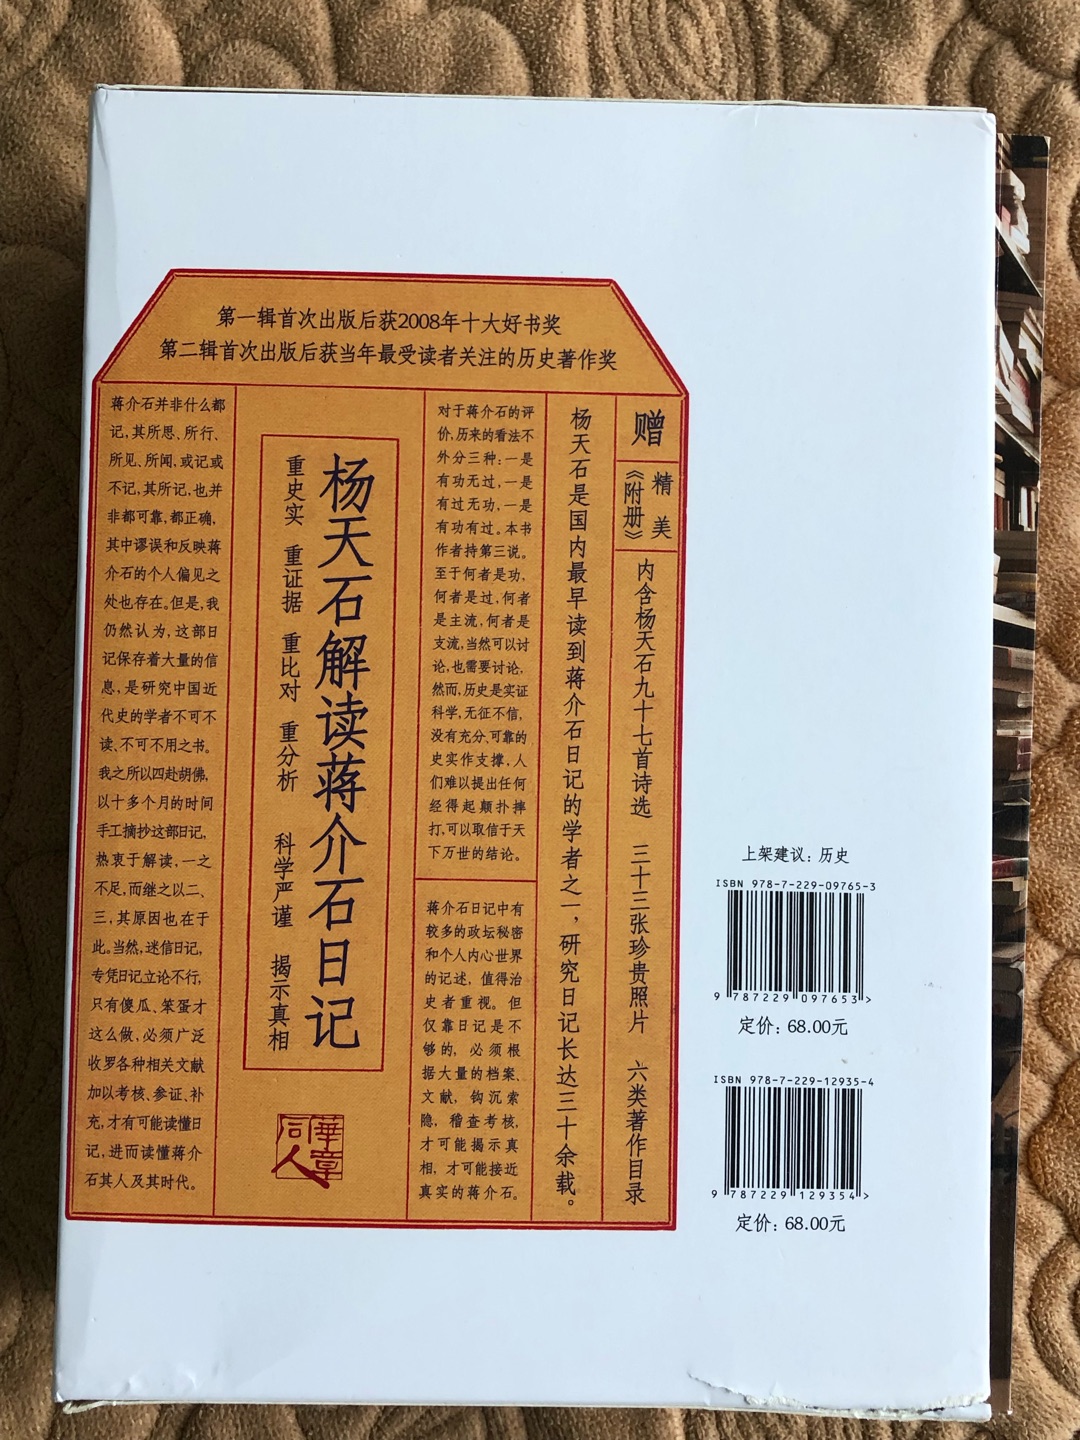 杨天石先生是当今中国近现代史领域卓有成就的学者，他在中华民国史、中国革命史、国民党史以及蒋介石研究等领域，都有开拓性的研究，其论著是初学者所不能忽略的。